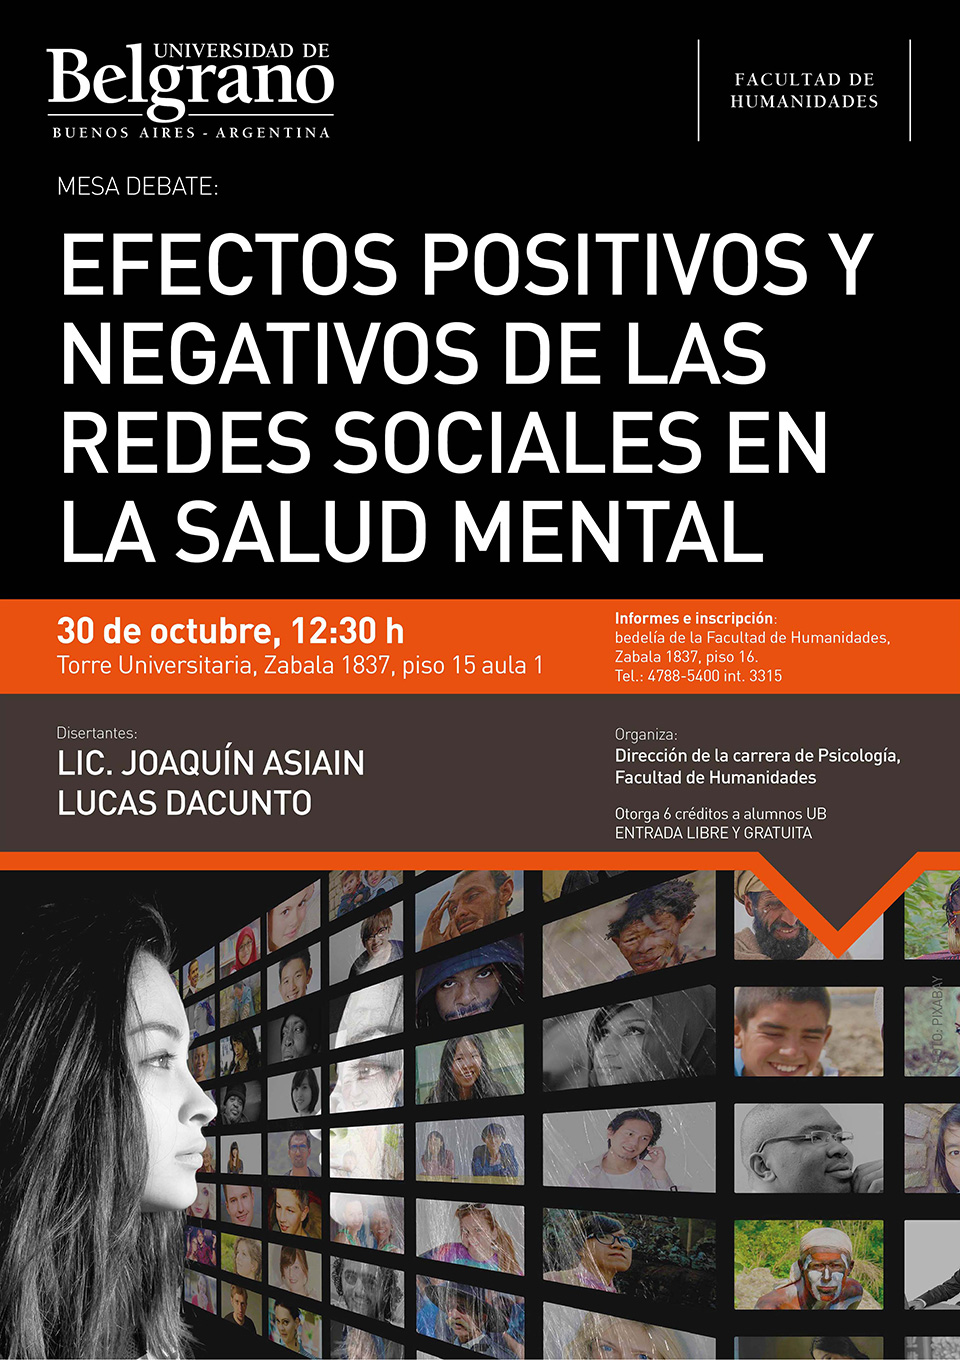 Universidad de Belgrano | Efectos Positivos y Negativos de las Redes Sociales en la Salud Mental